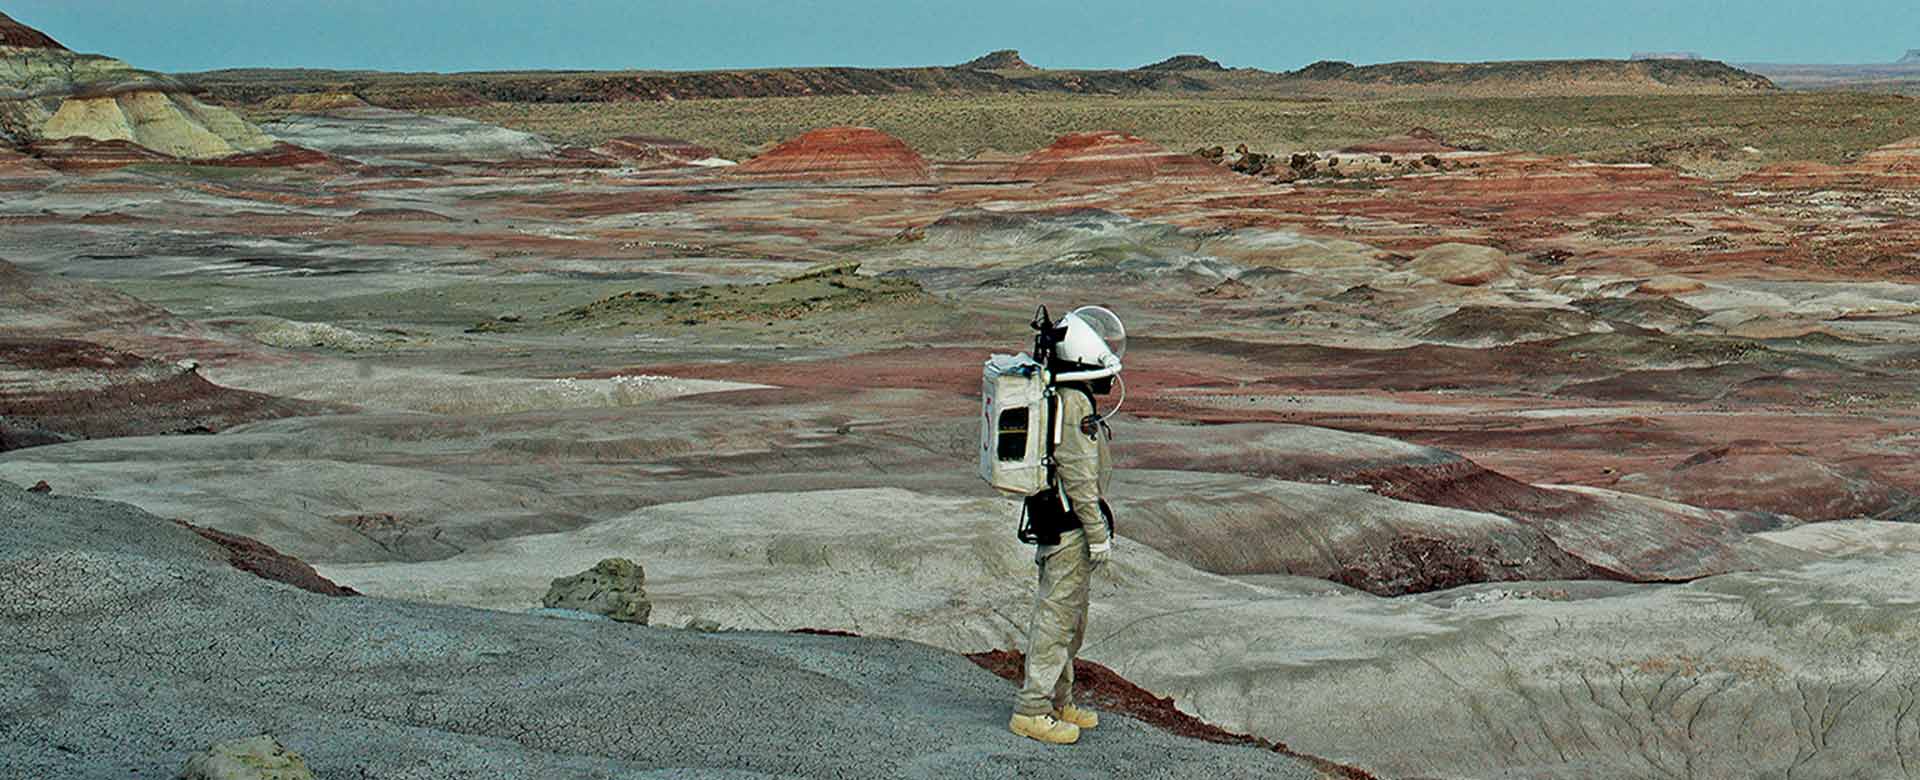 Vincent Fournier, Mars Desert Station #11, Utah, Usa (2008)